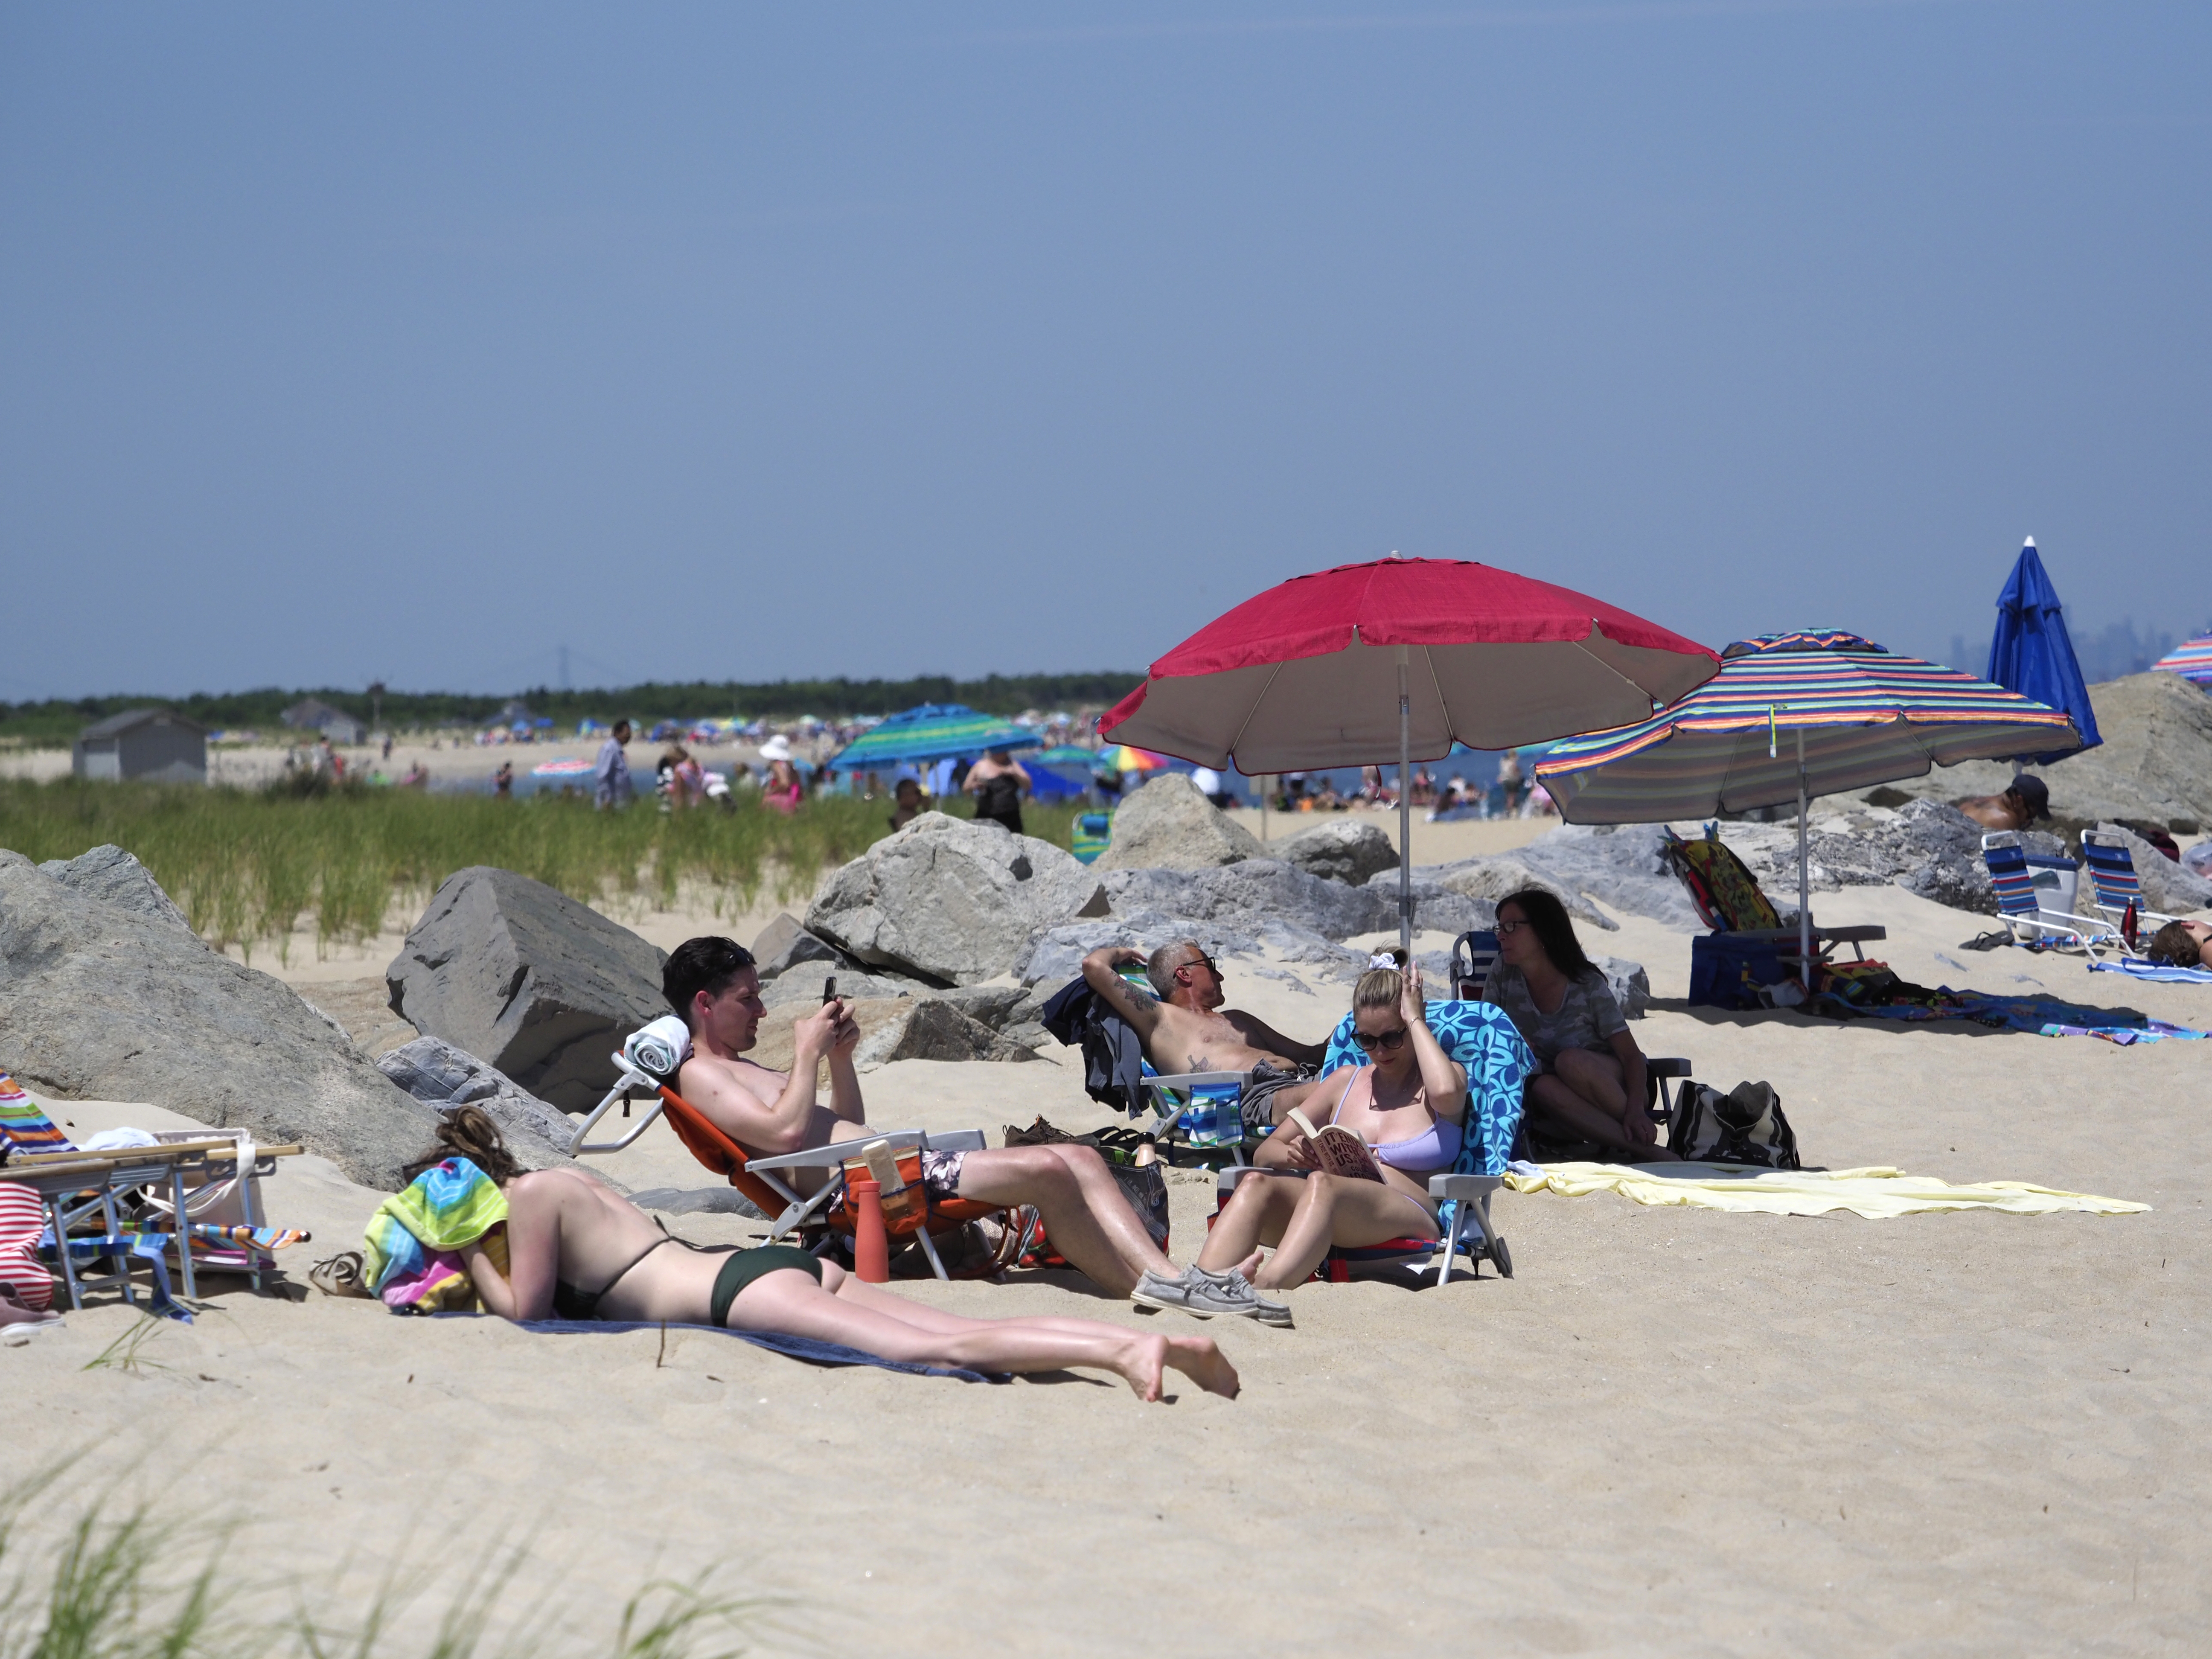 Top nude beach list names New Jersey spot among best worldwide - silive.com